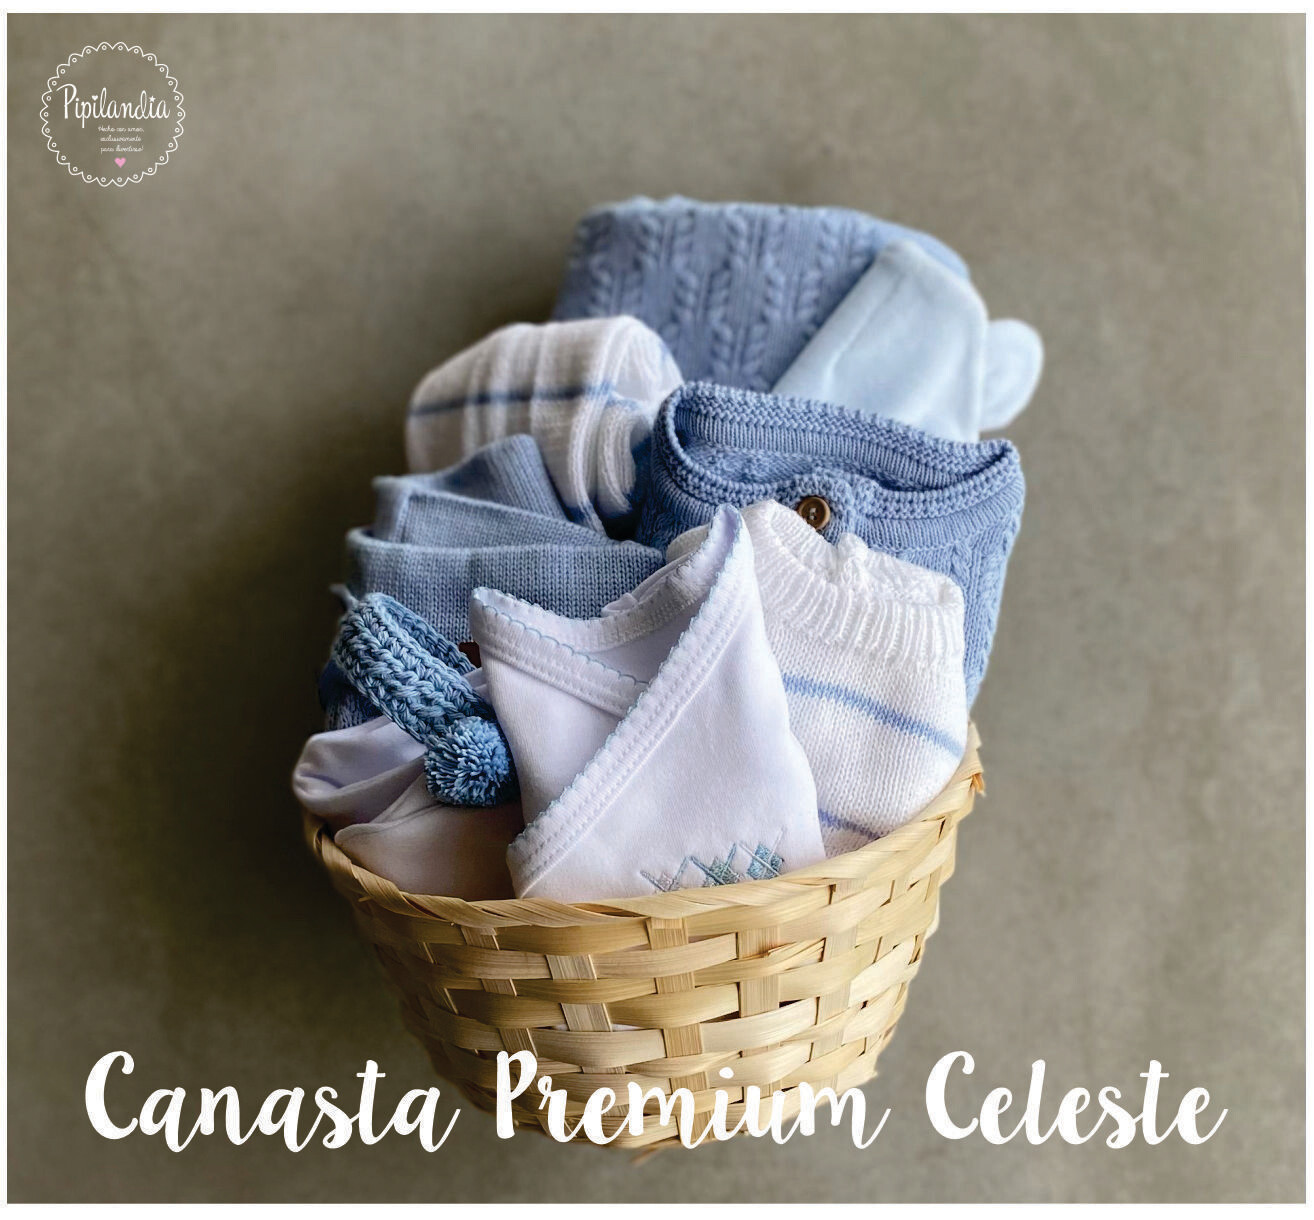 Canasta Premium Celeste